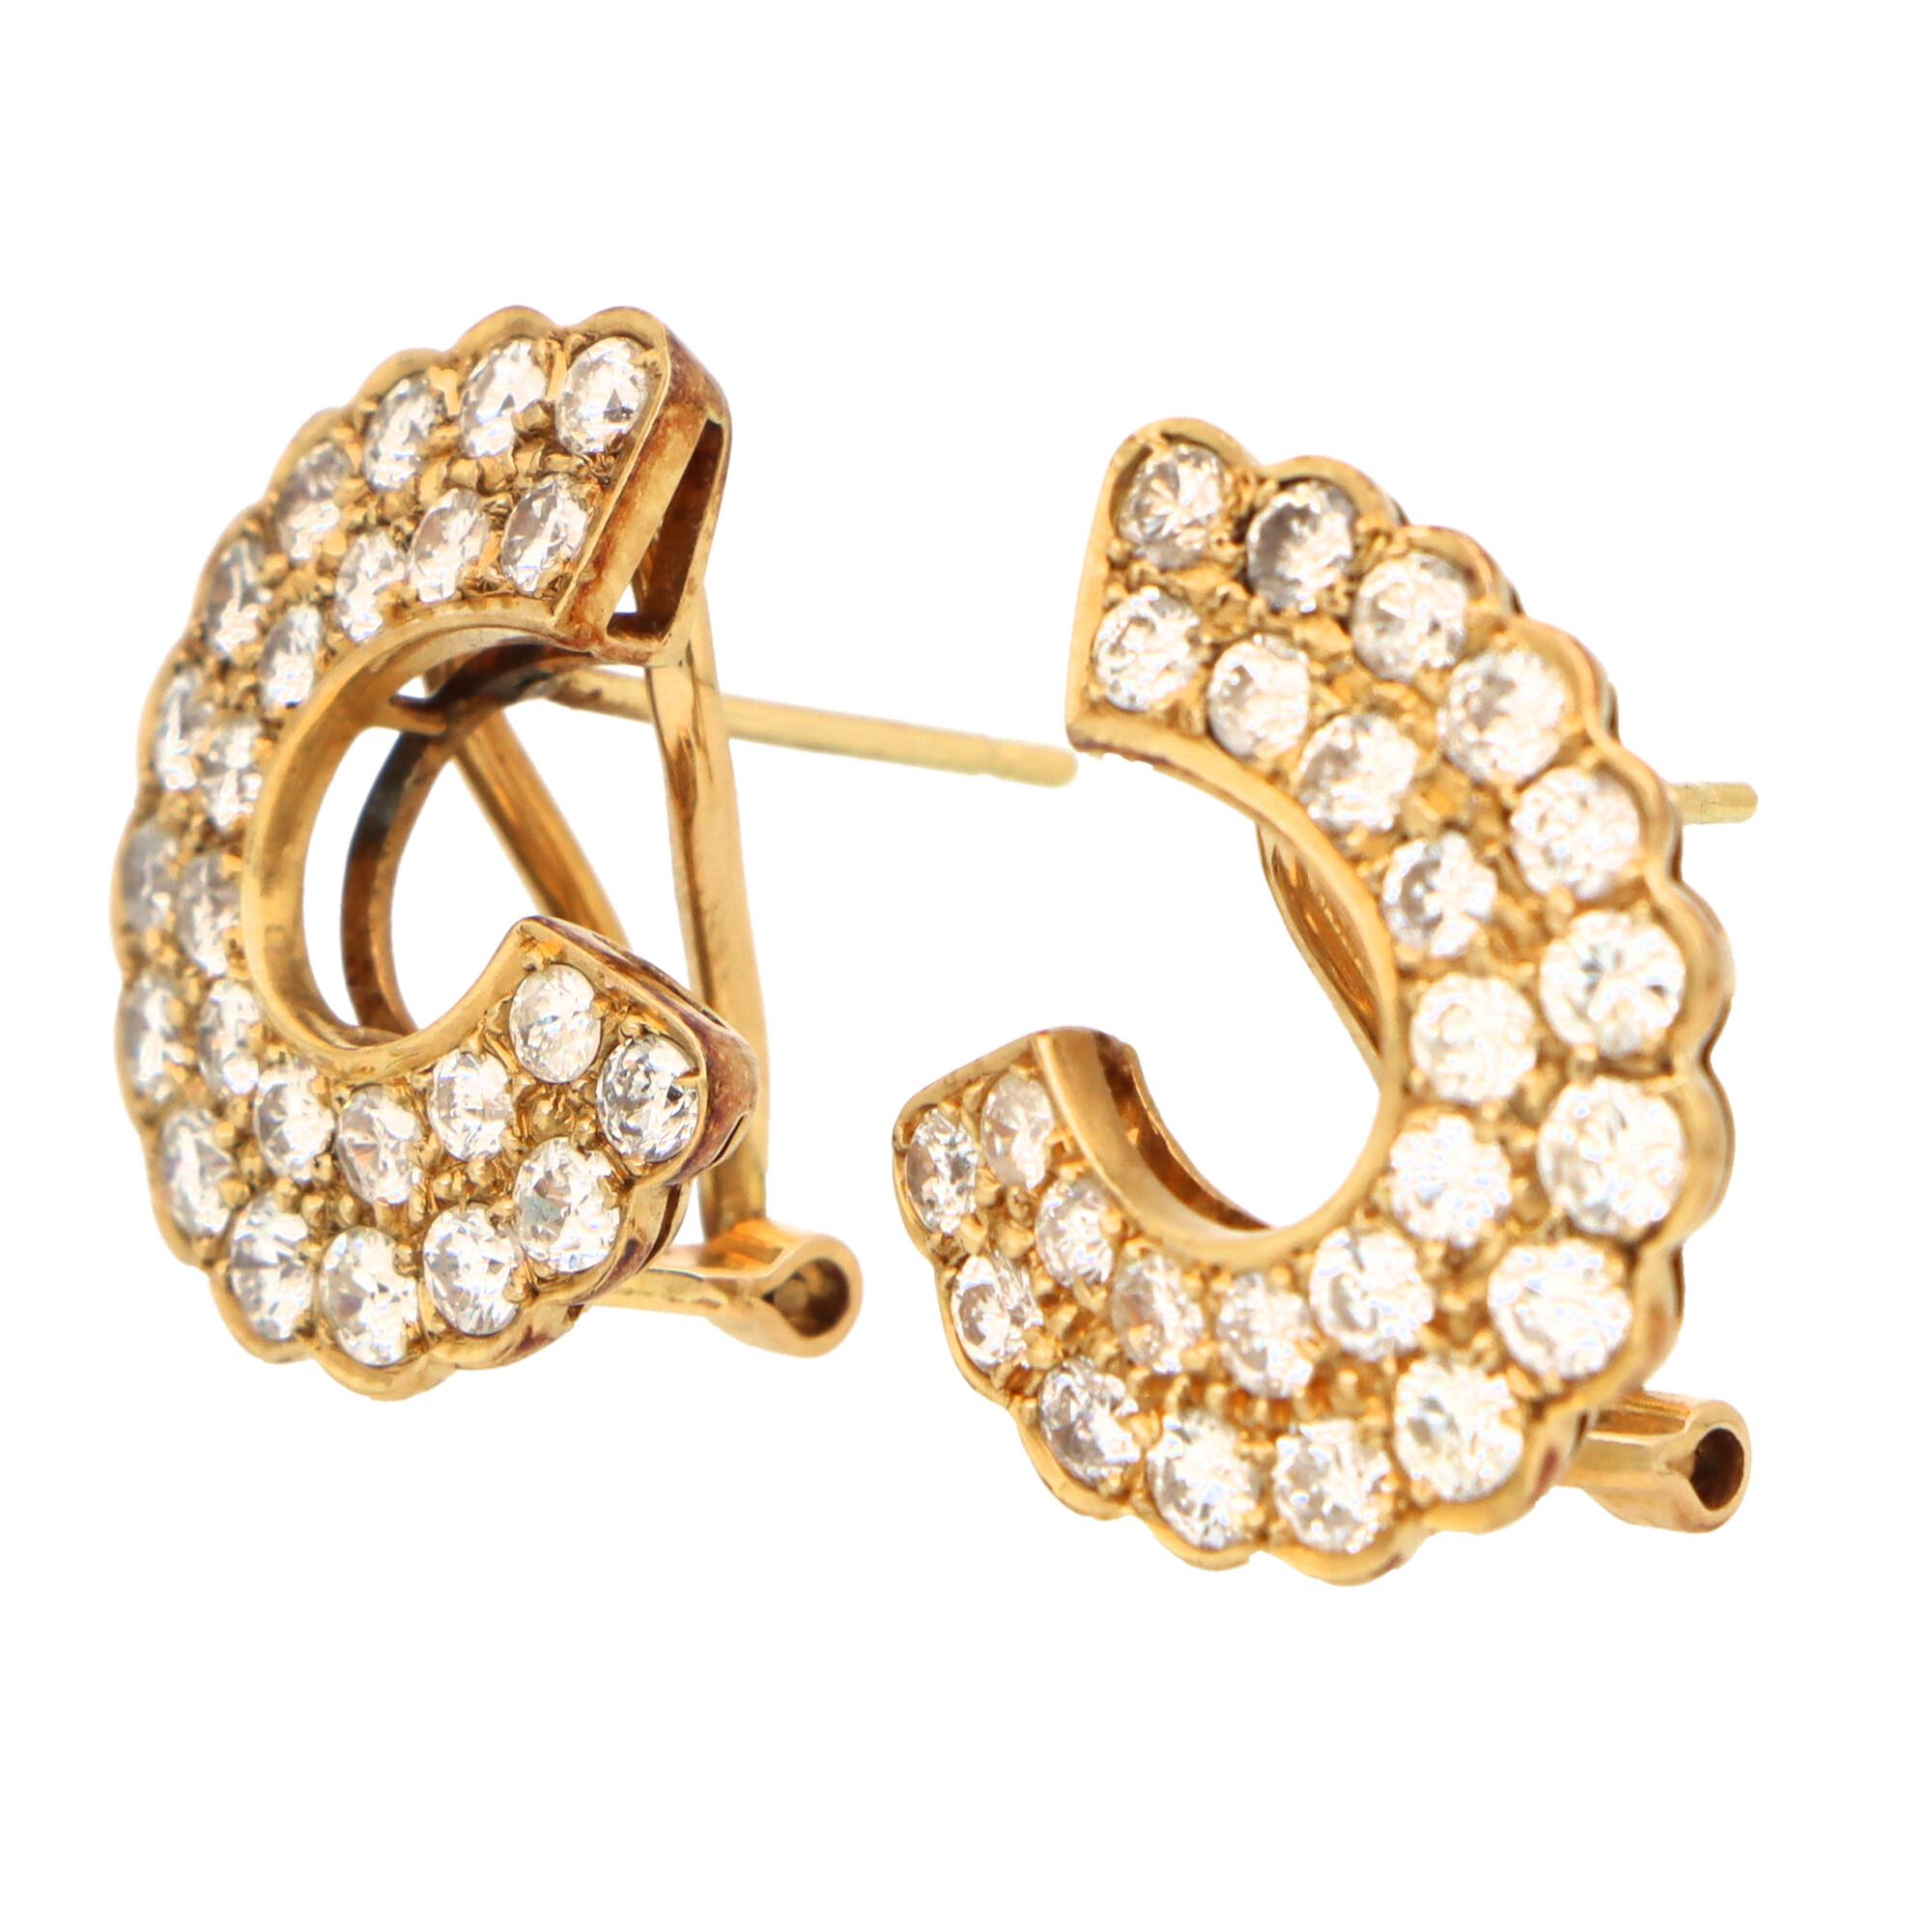 Round Cut Vintage Diamond 'C' Half Hoop Earrings Set in 18k Yellow Gold